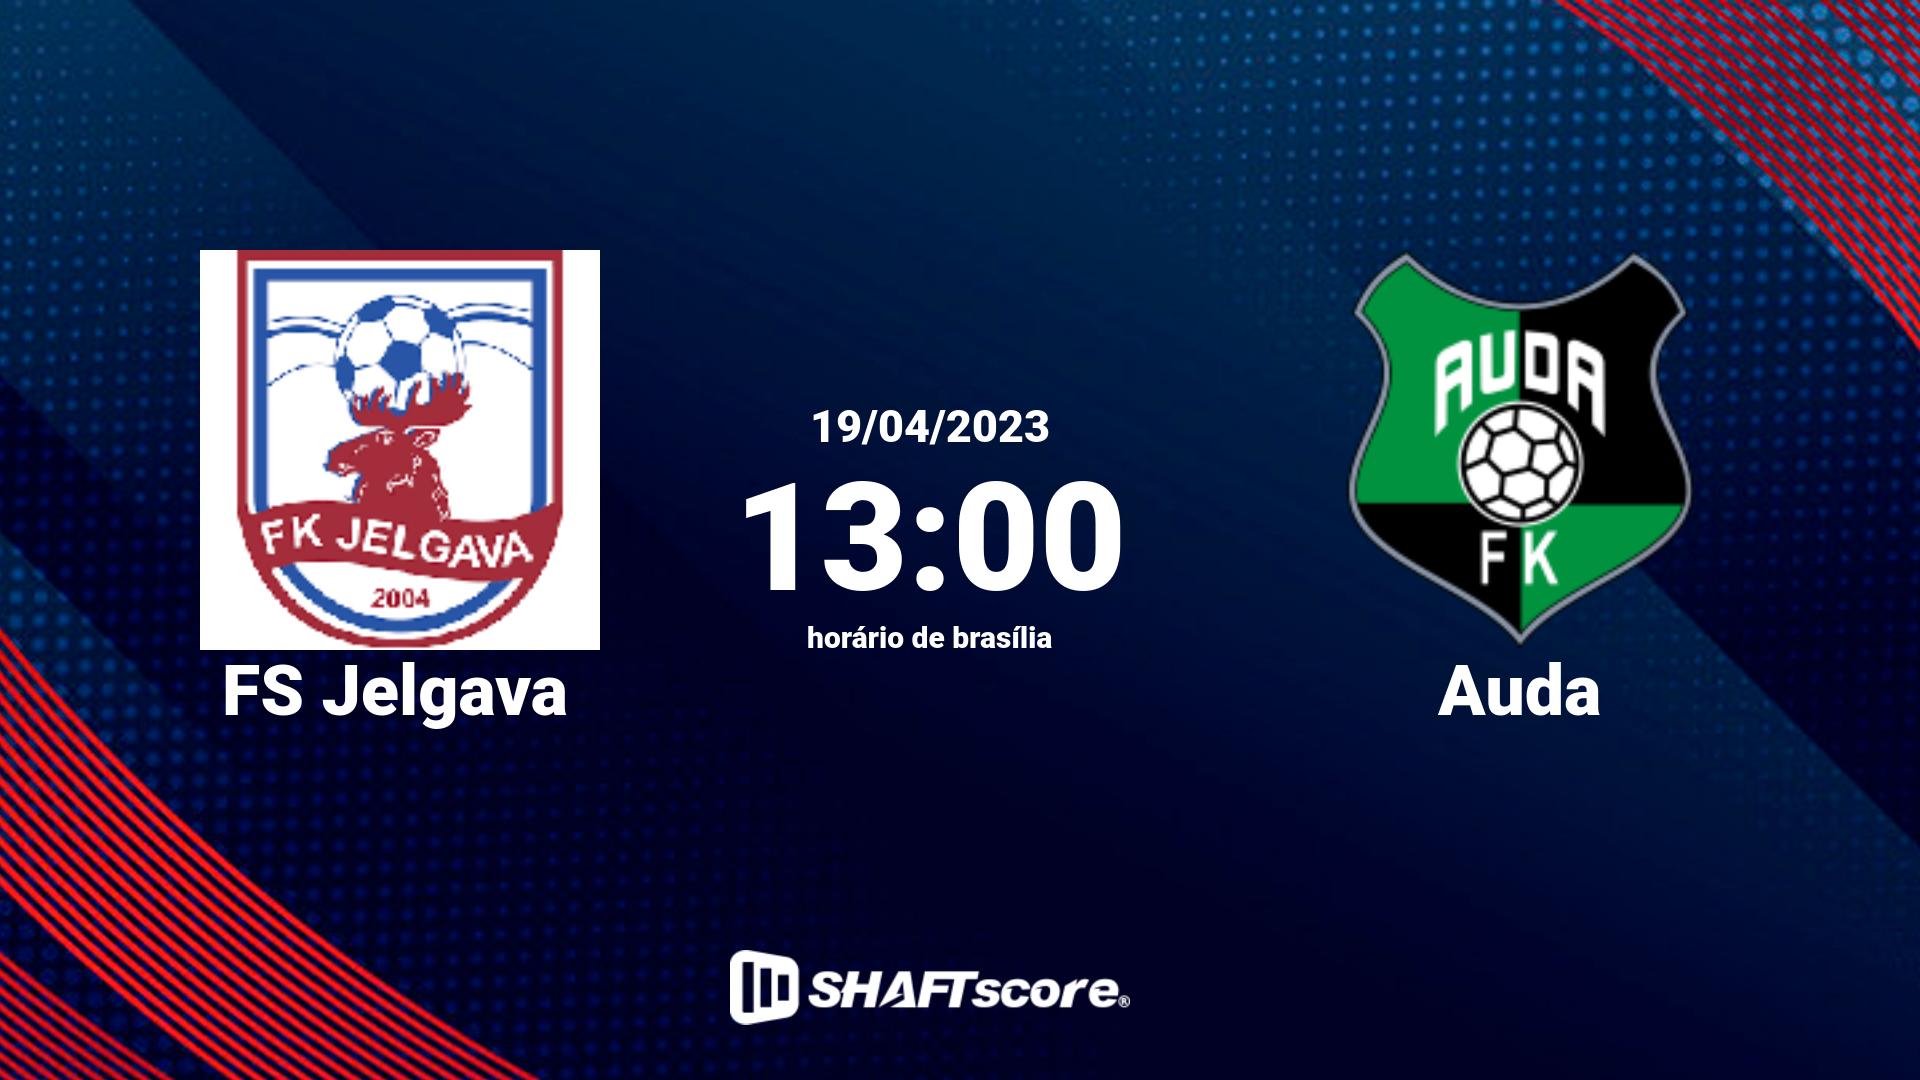 Estatísticas do jogo FS Jelgava vs Auda 19.04 13:00